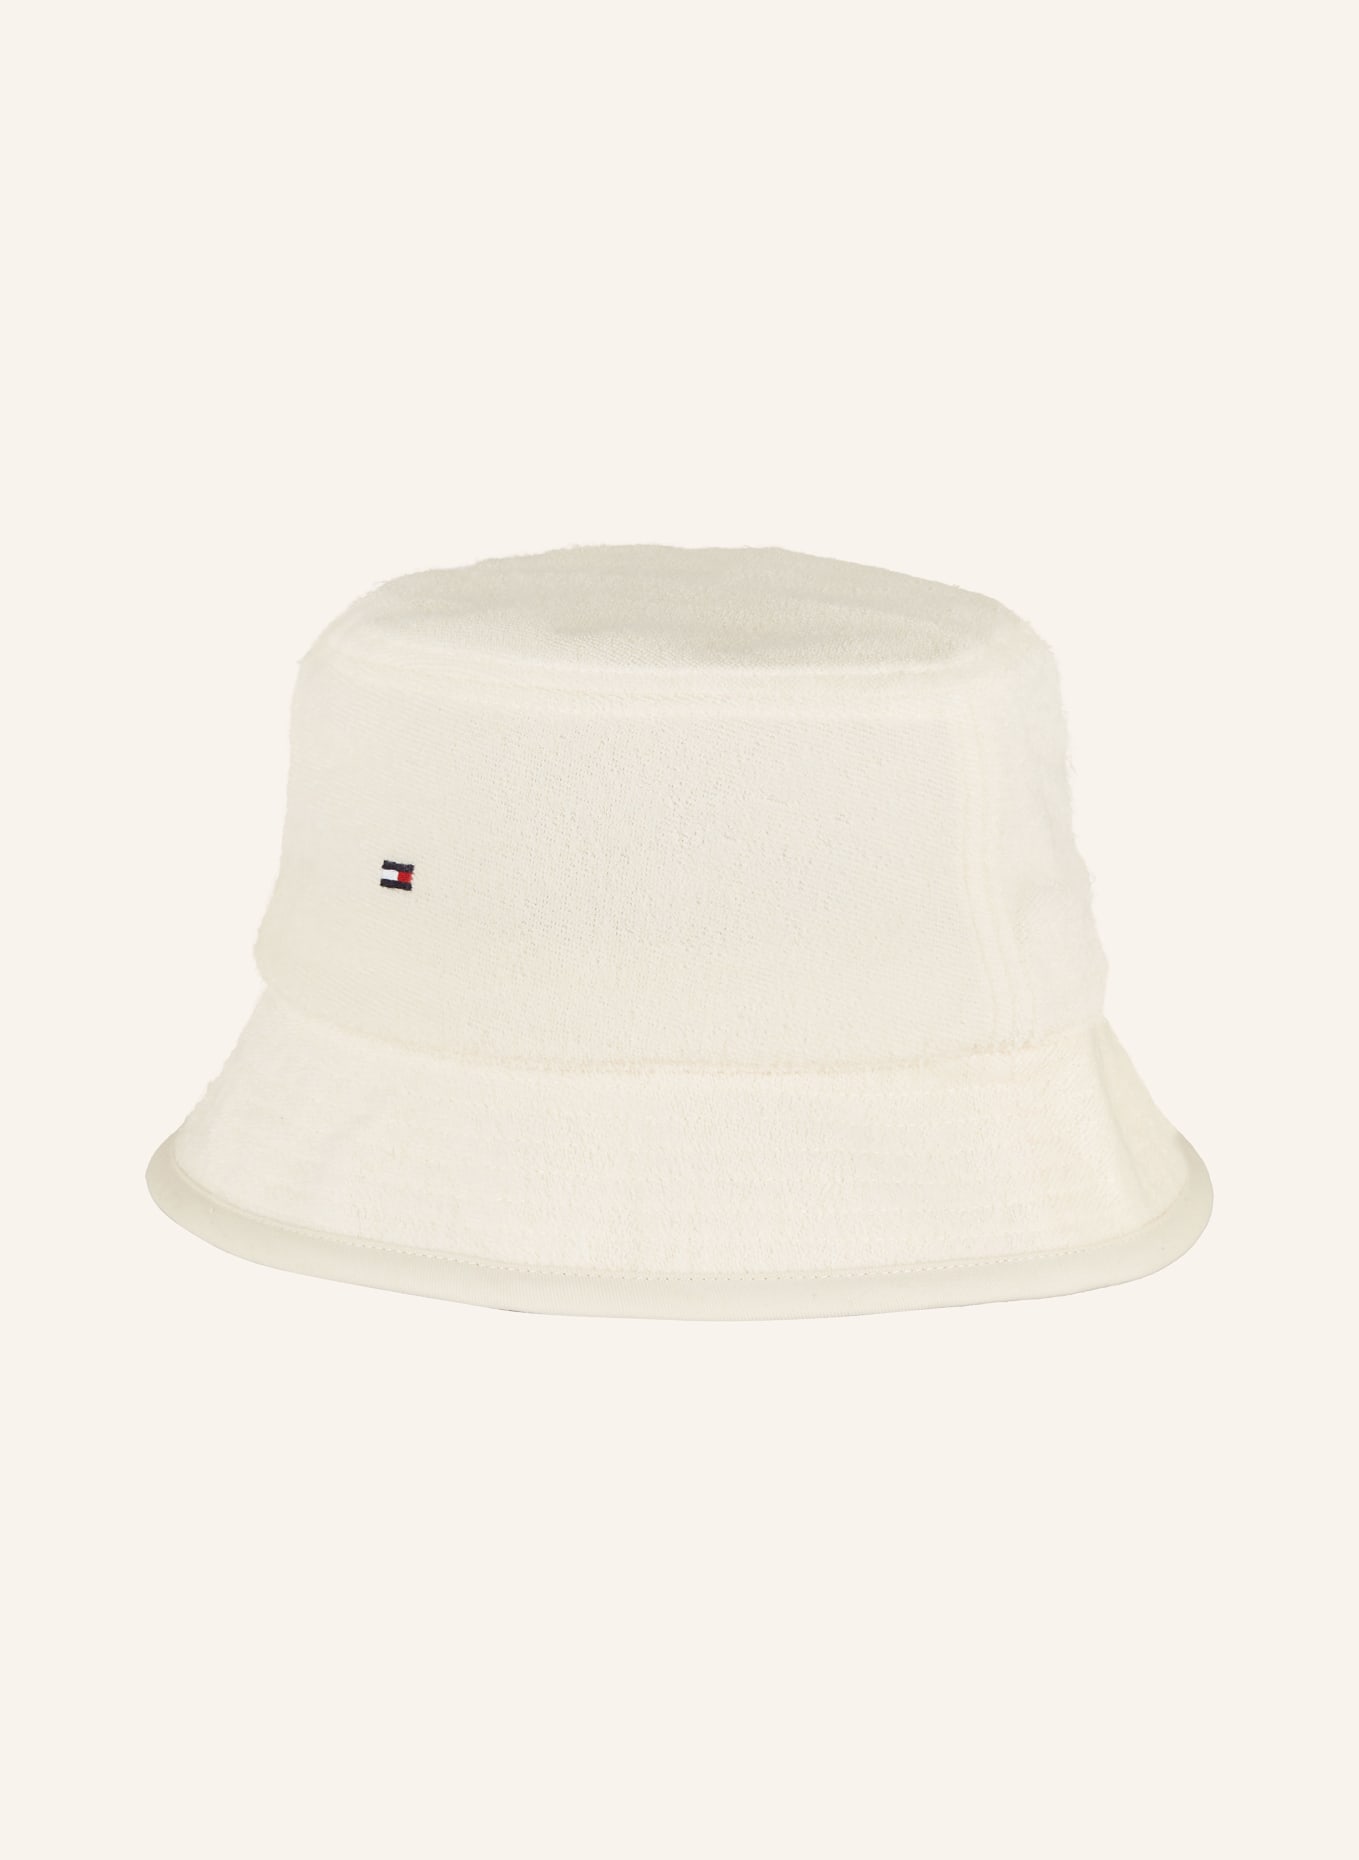 TOMMY HILFIGER Bucket hat, Color: ECRU (Image 2)